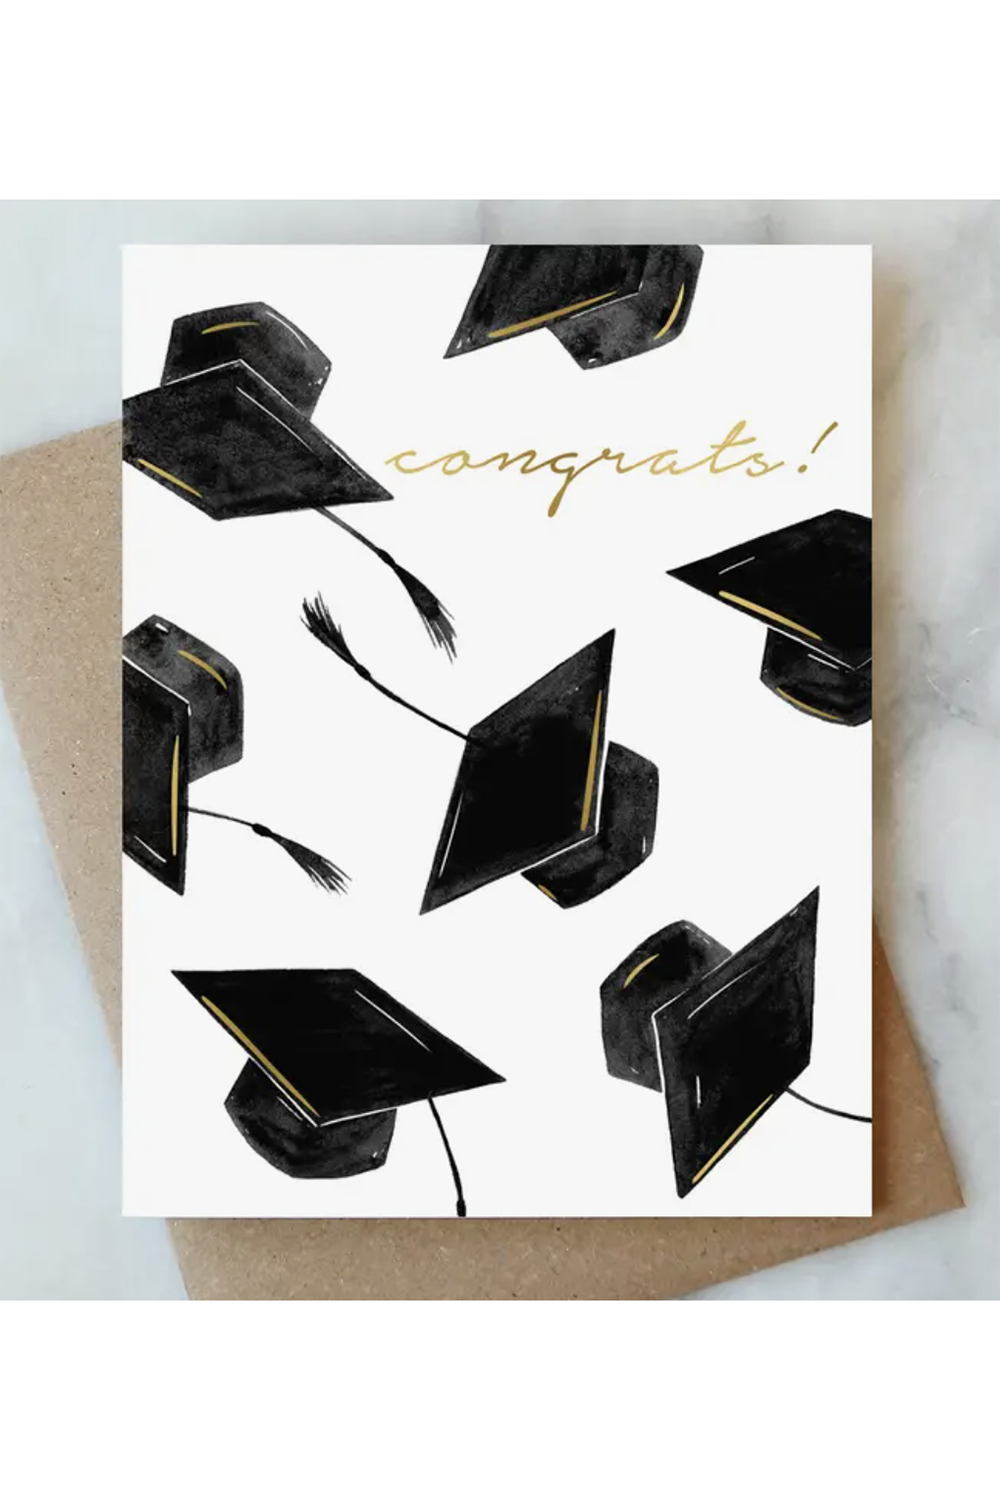 AJD Graduation Card - Hat Congrats